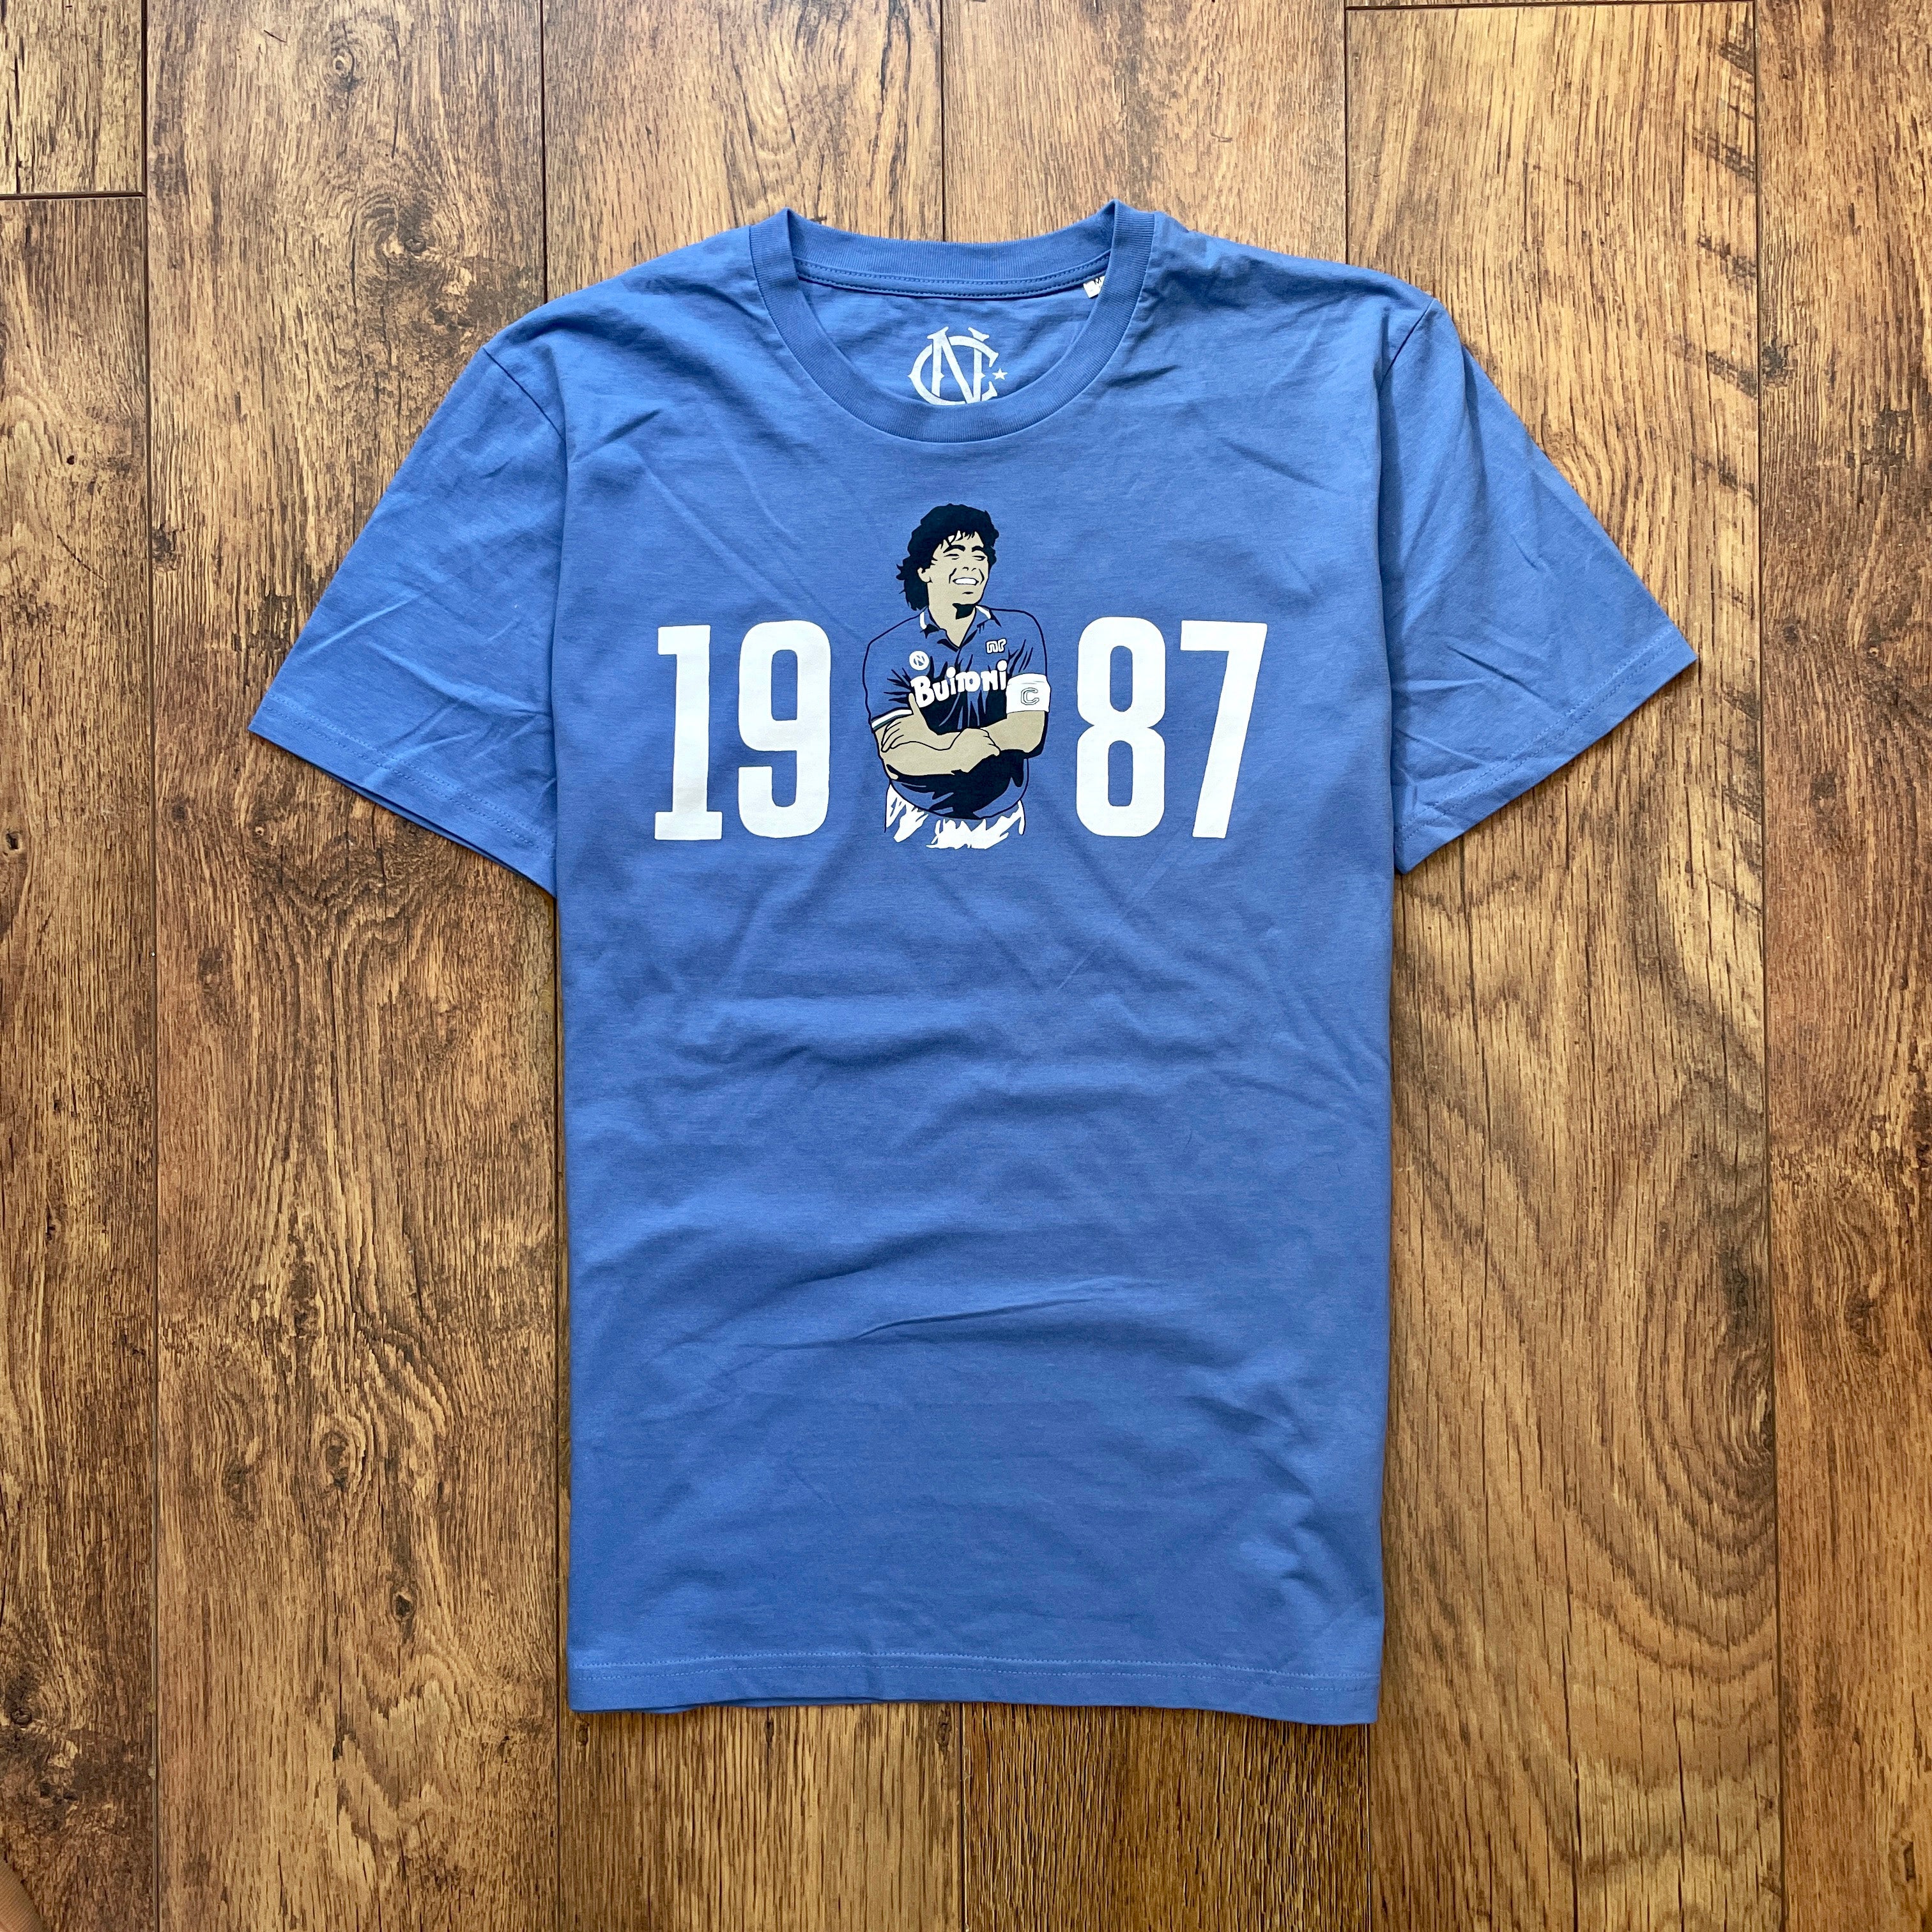 Maradona Napoli shirt t-shirt